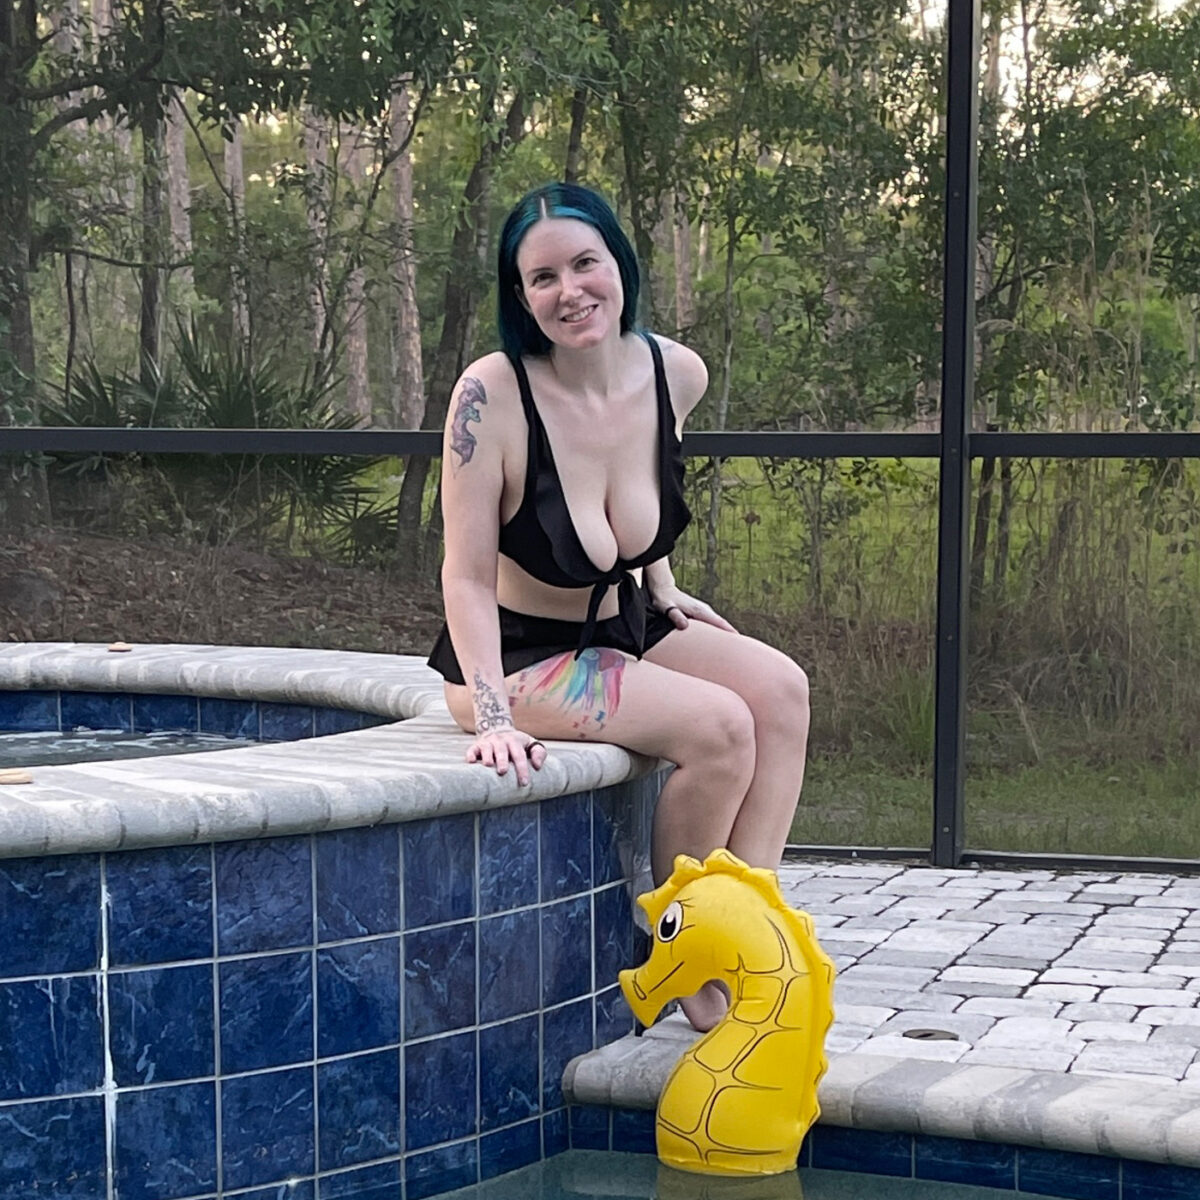 Sitting on the edge of the hot tub in the Circus Bikini